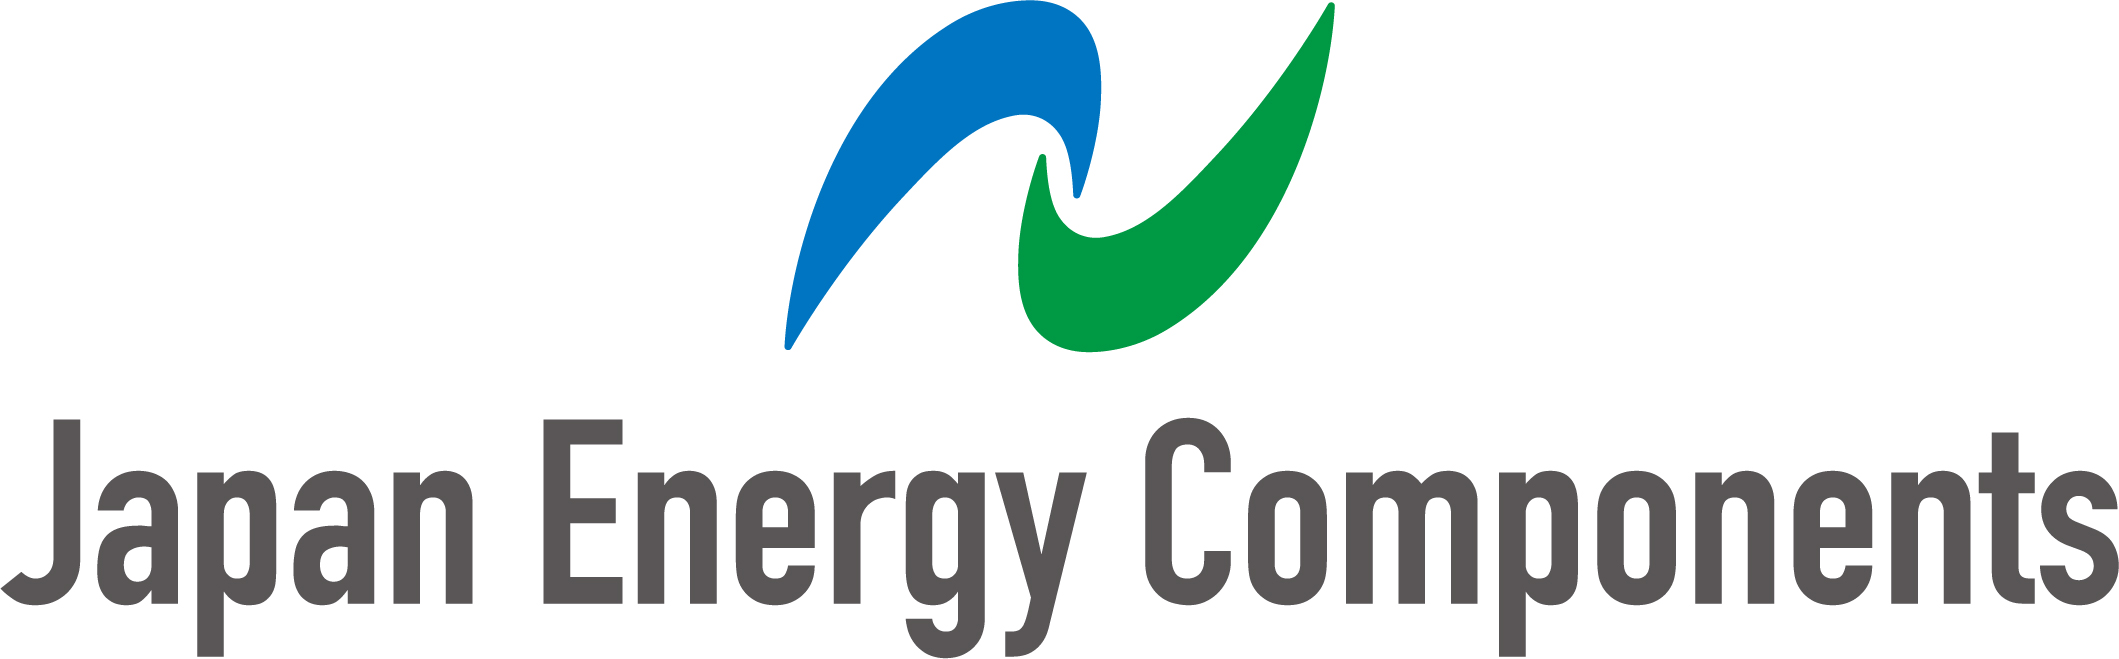 Japan Energy Components Co., Ltd. - JEC